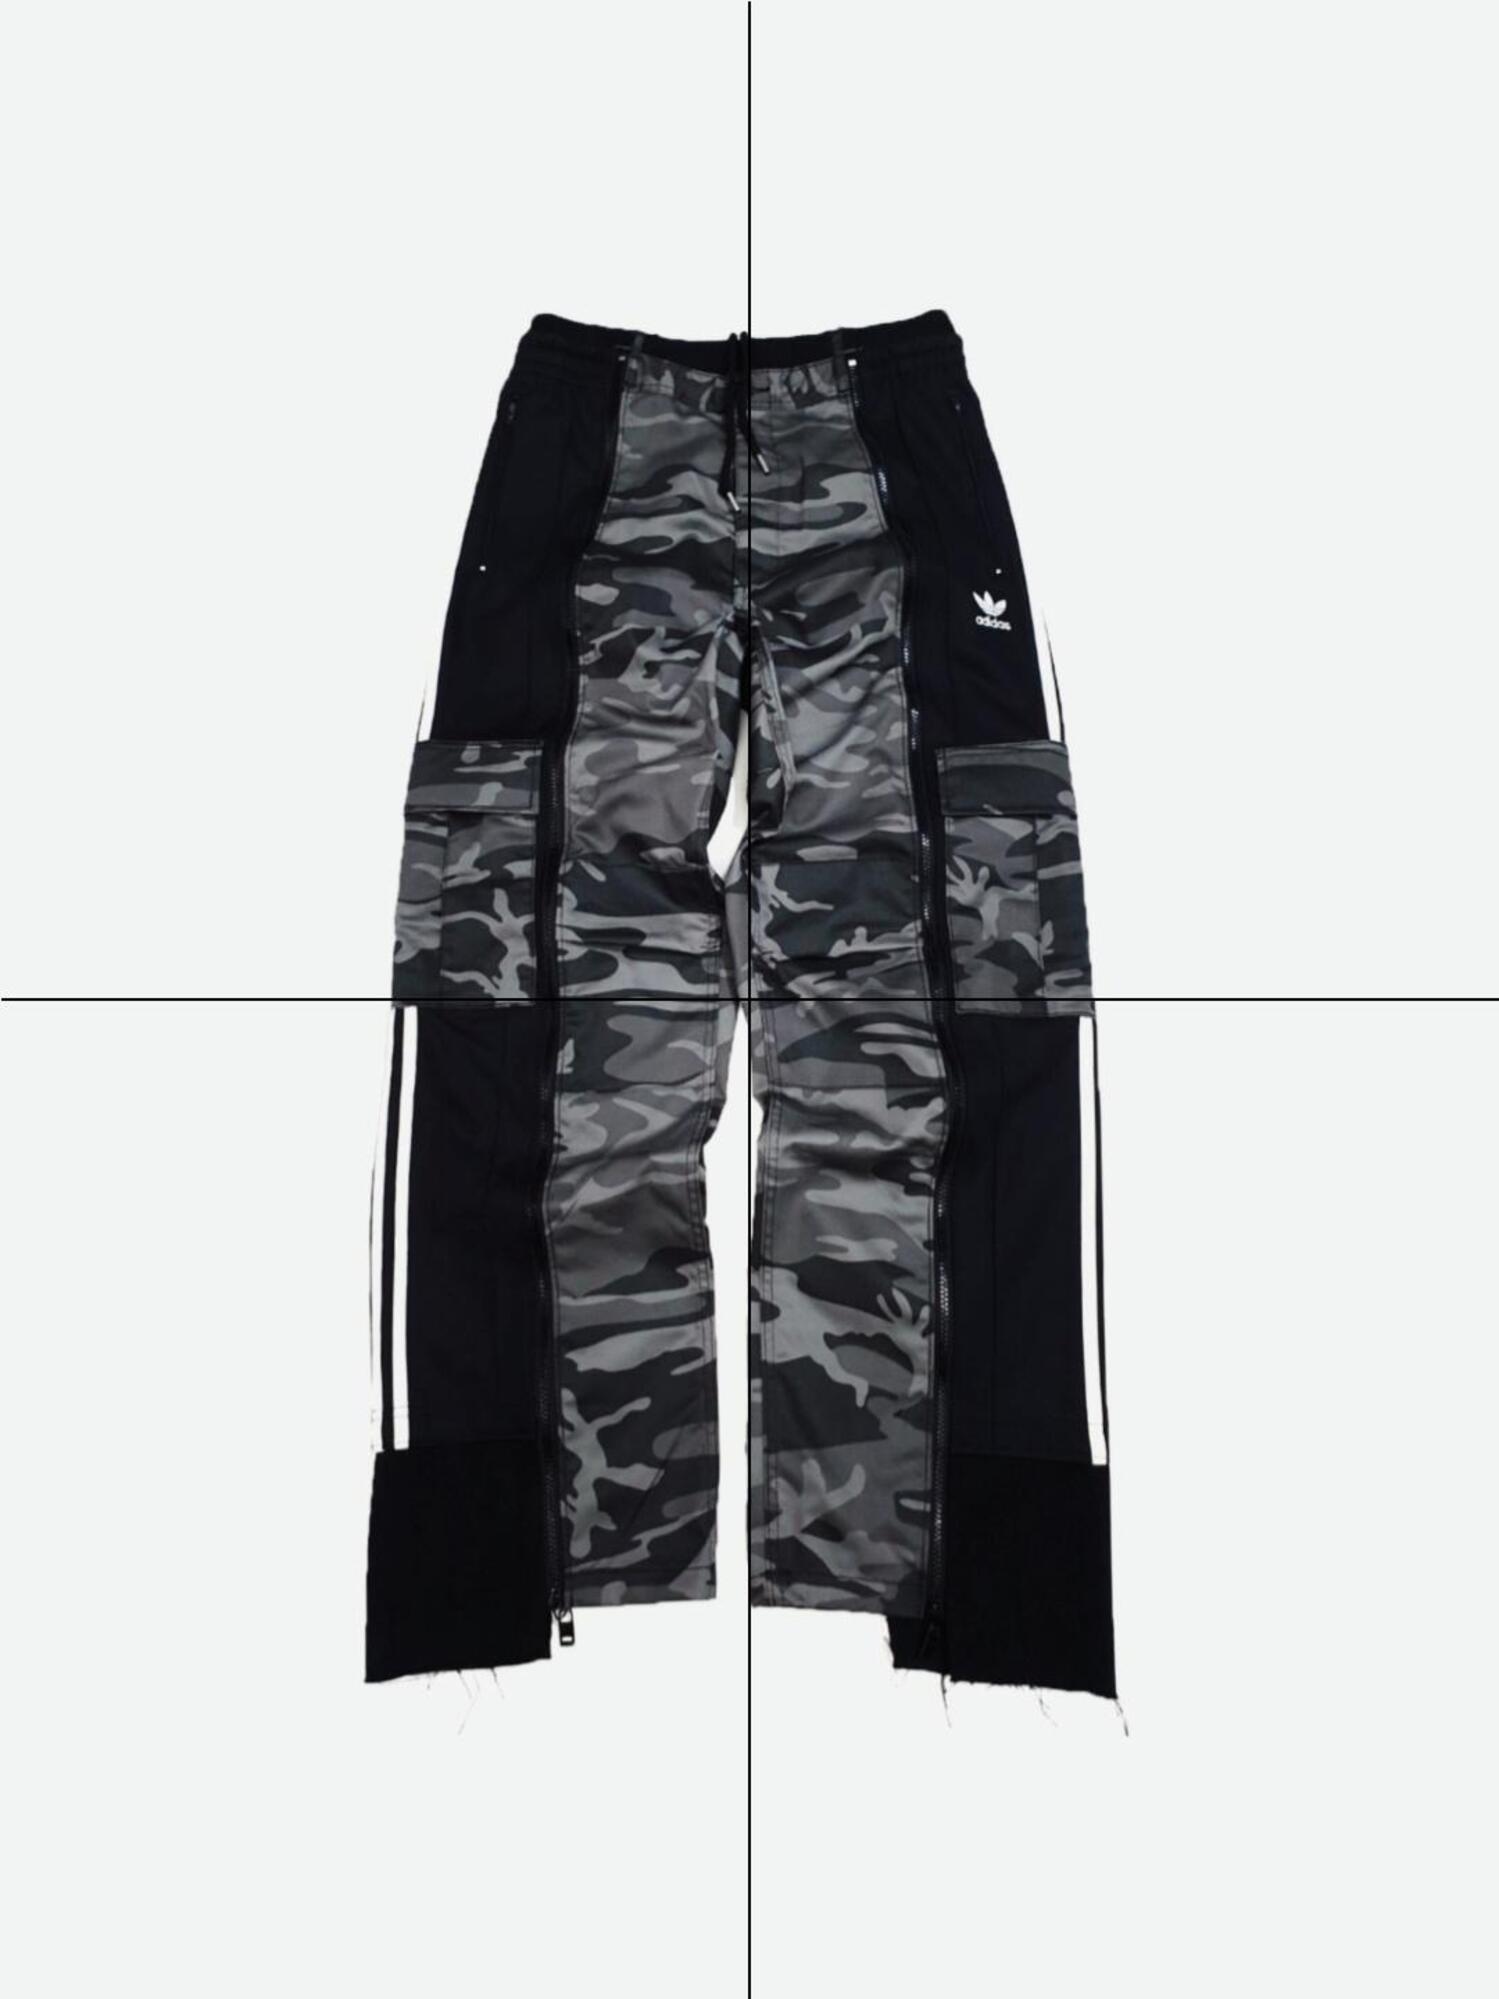 Adidas military pants no.1